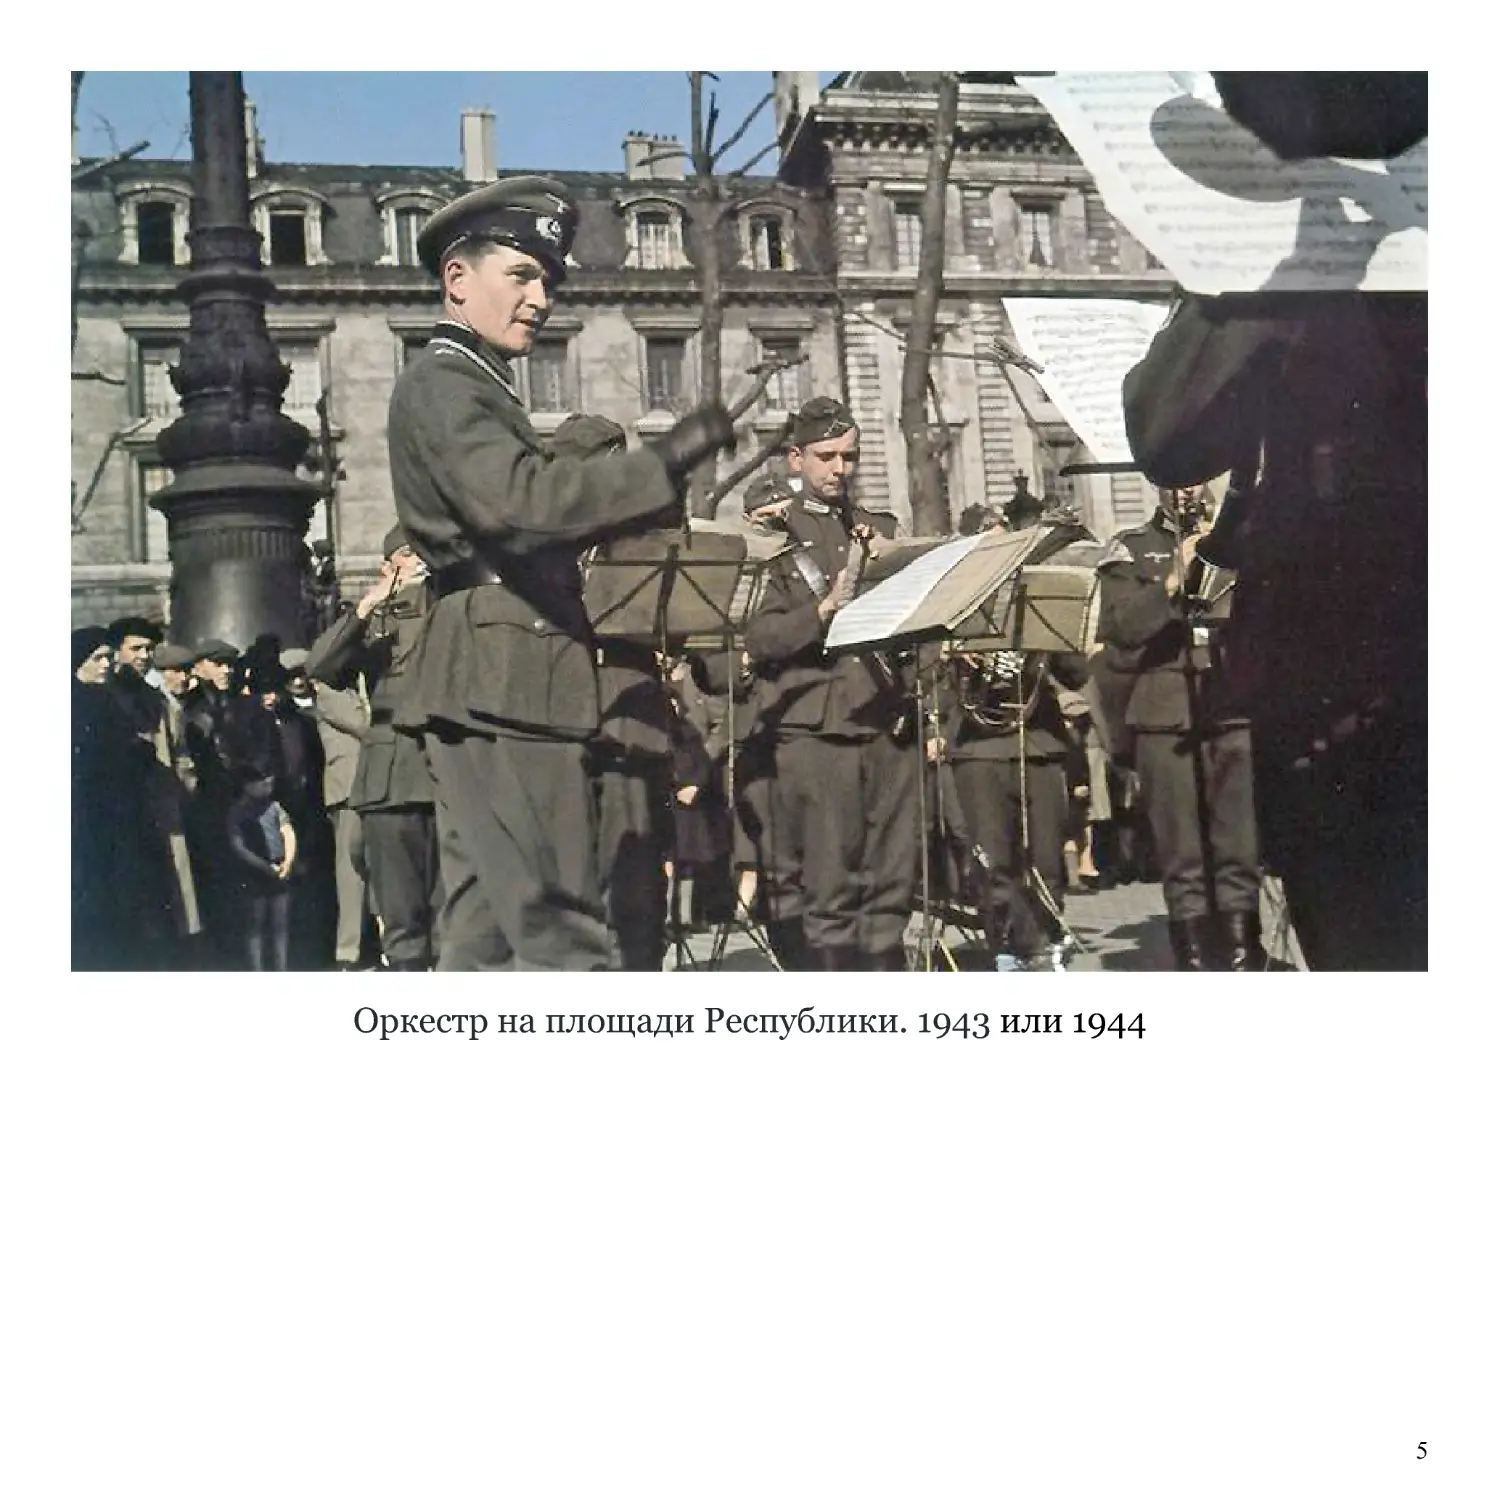 Оркестр на площади Республики. 1943 или 1944